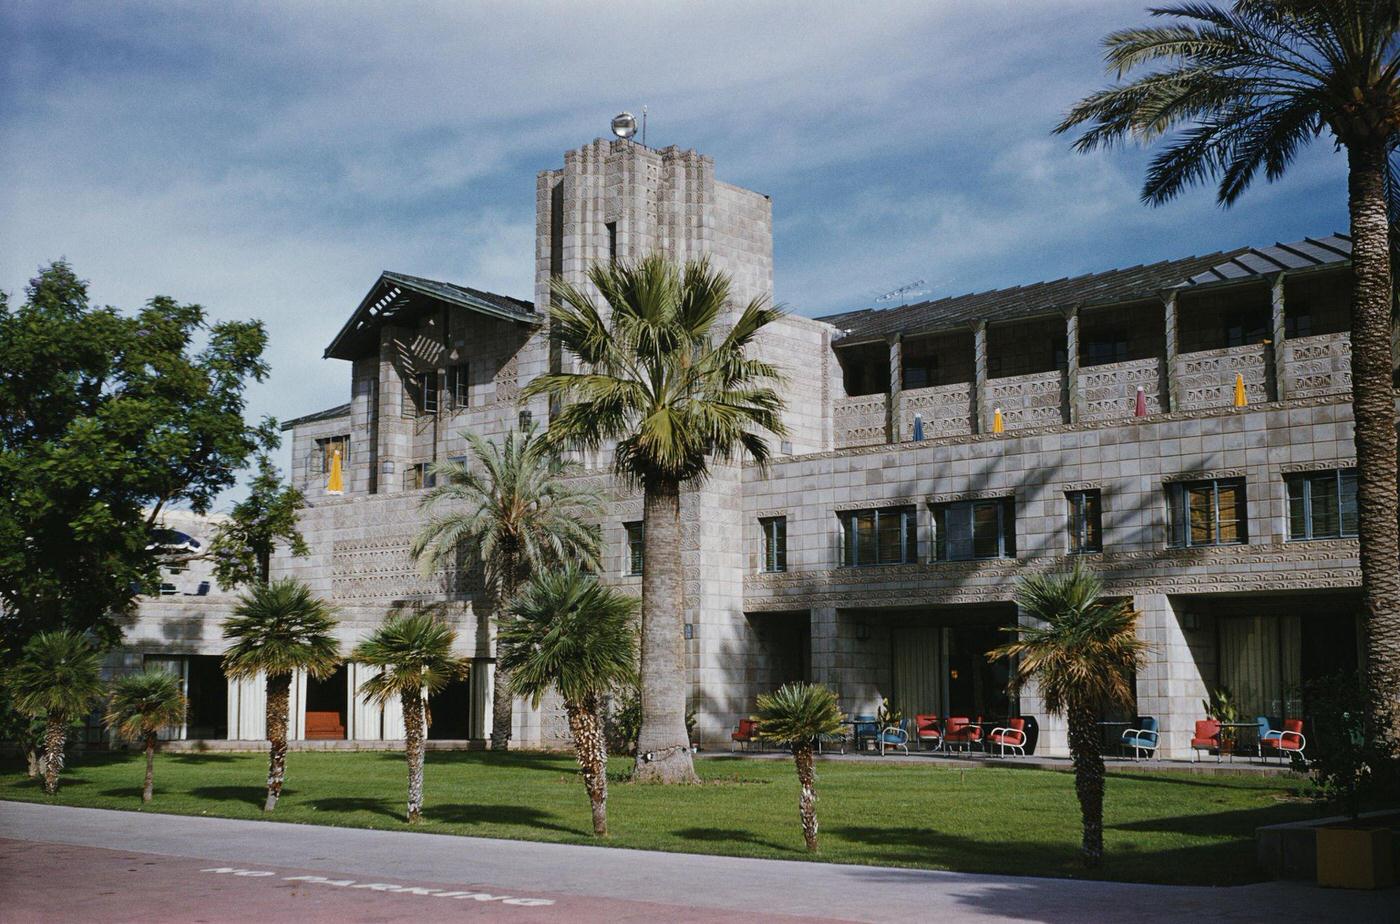 Arizona Biltmore Hotel, 1960s